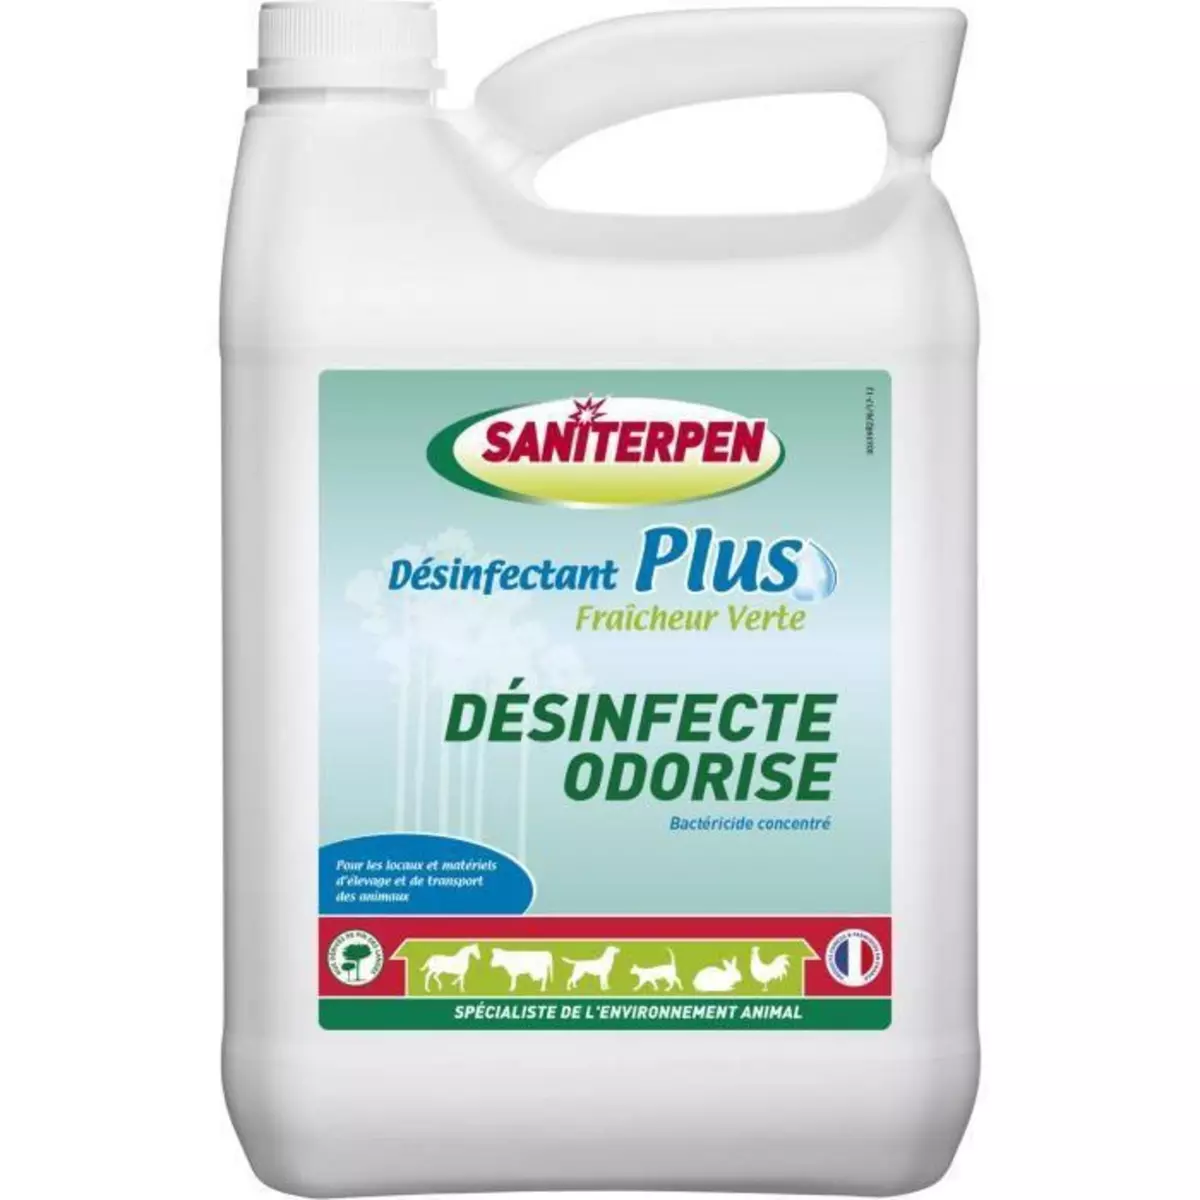  SANITERPEN - Désinfectant Plus Fraicheur Verte 5L.